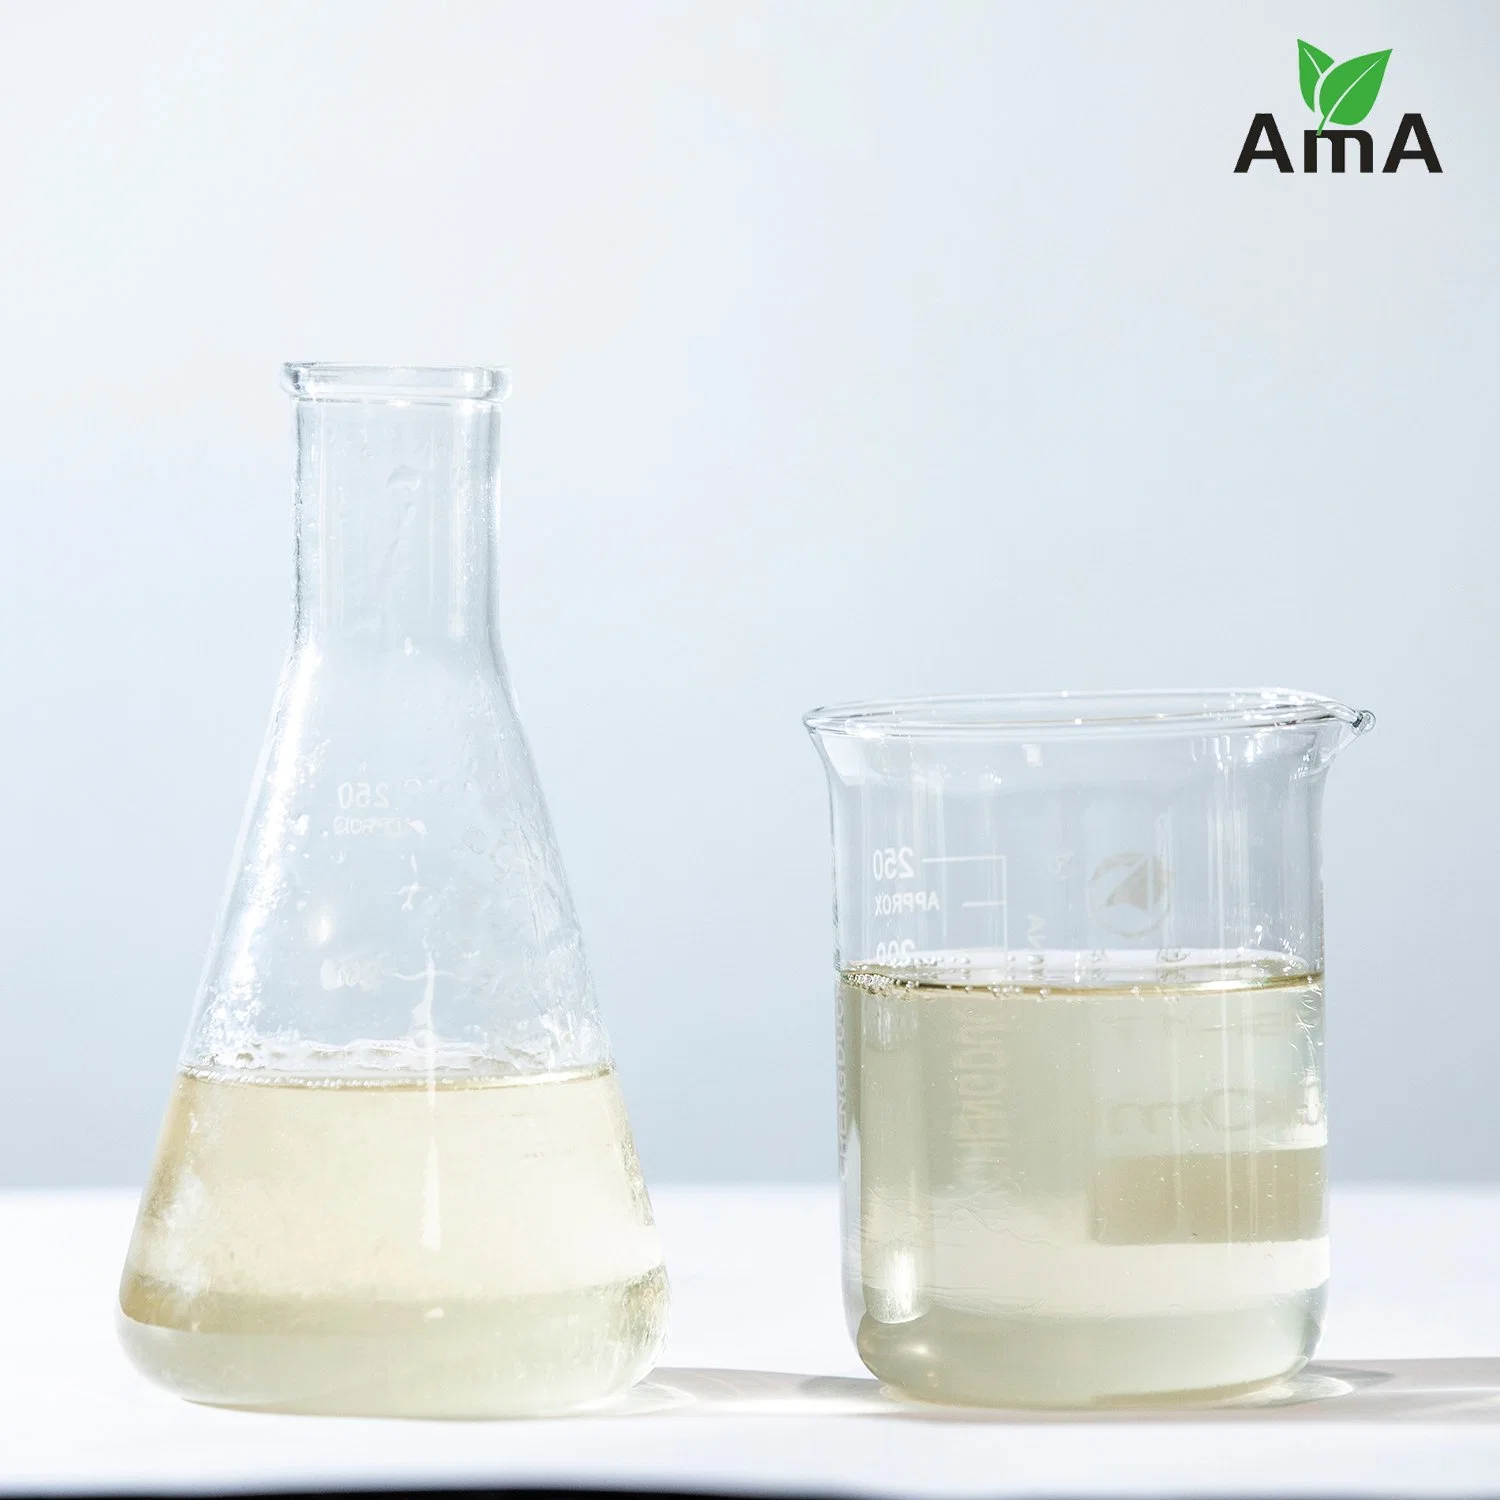 Amino Acid Organic Liquid Fertilizer Containing Calcium Magnesium